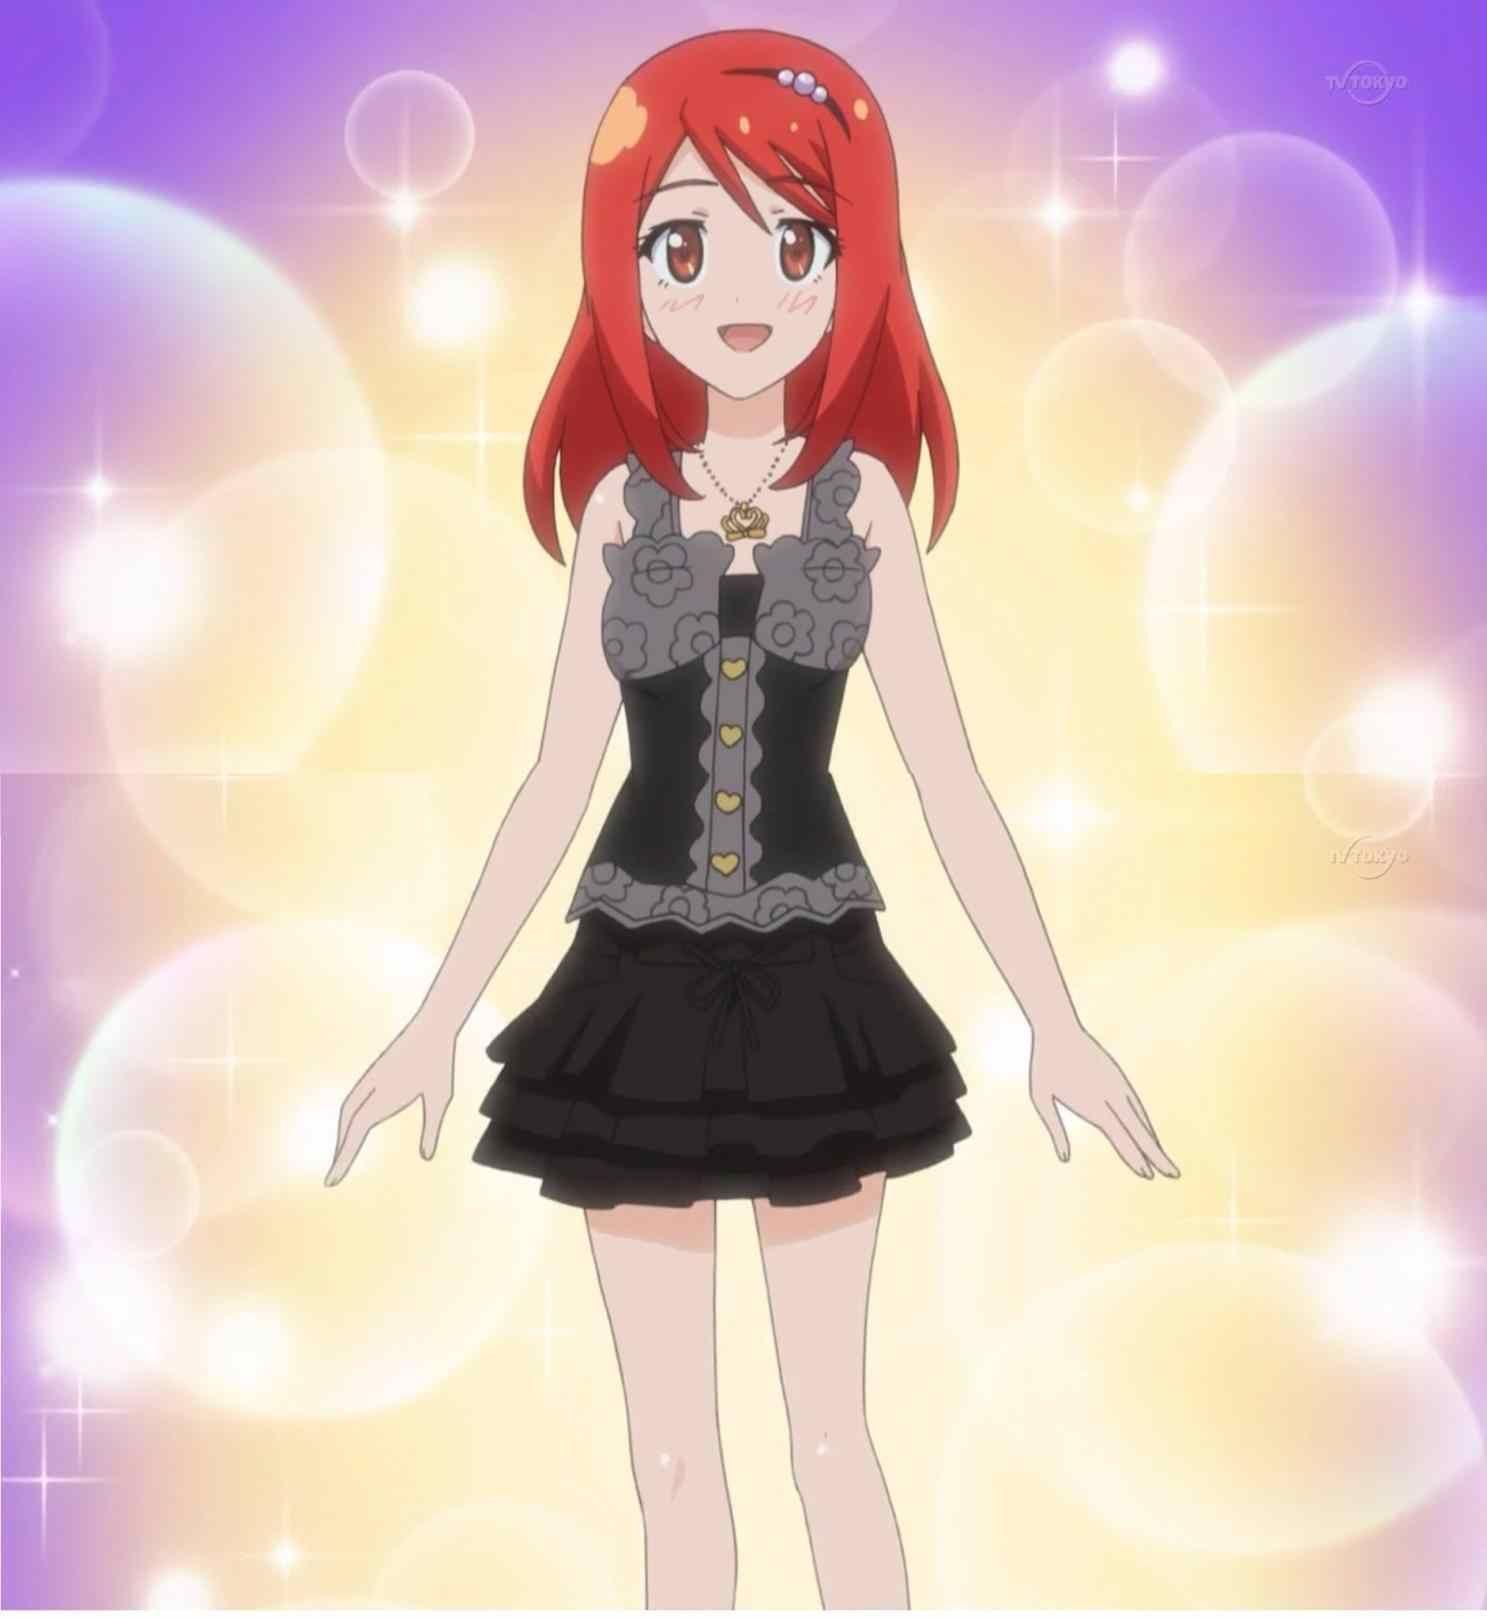 Rhythm pin pretty anime fairy by jellal scarlet on rhythm